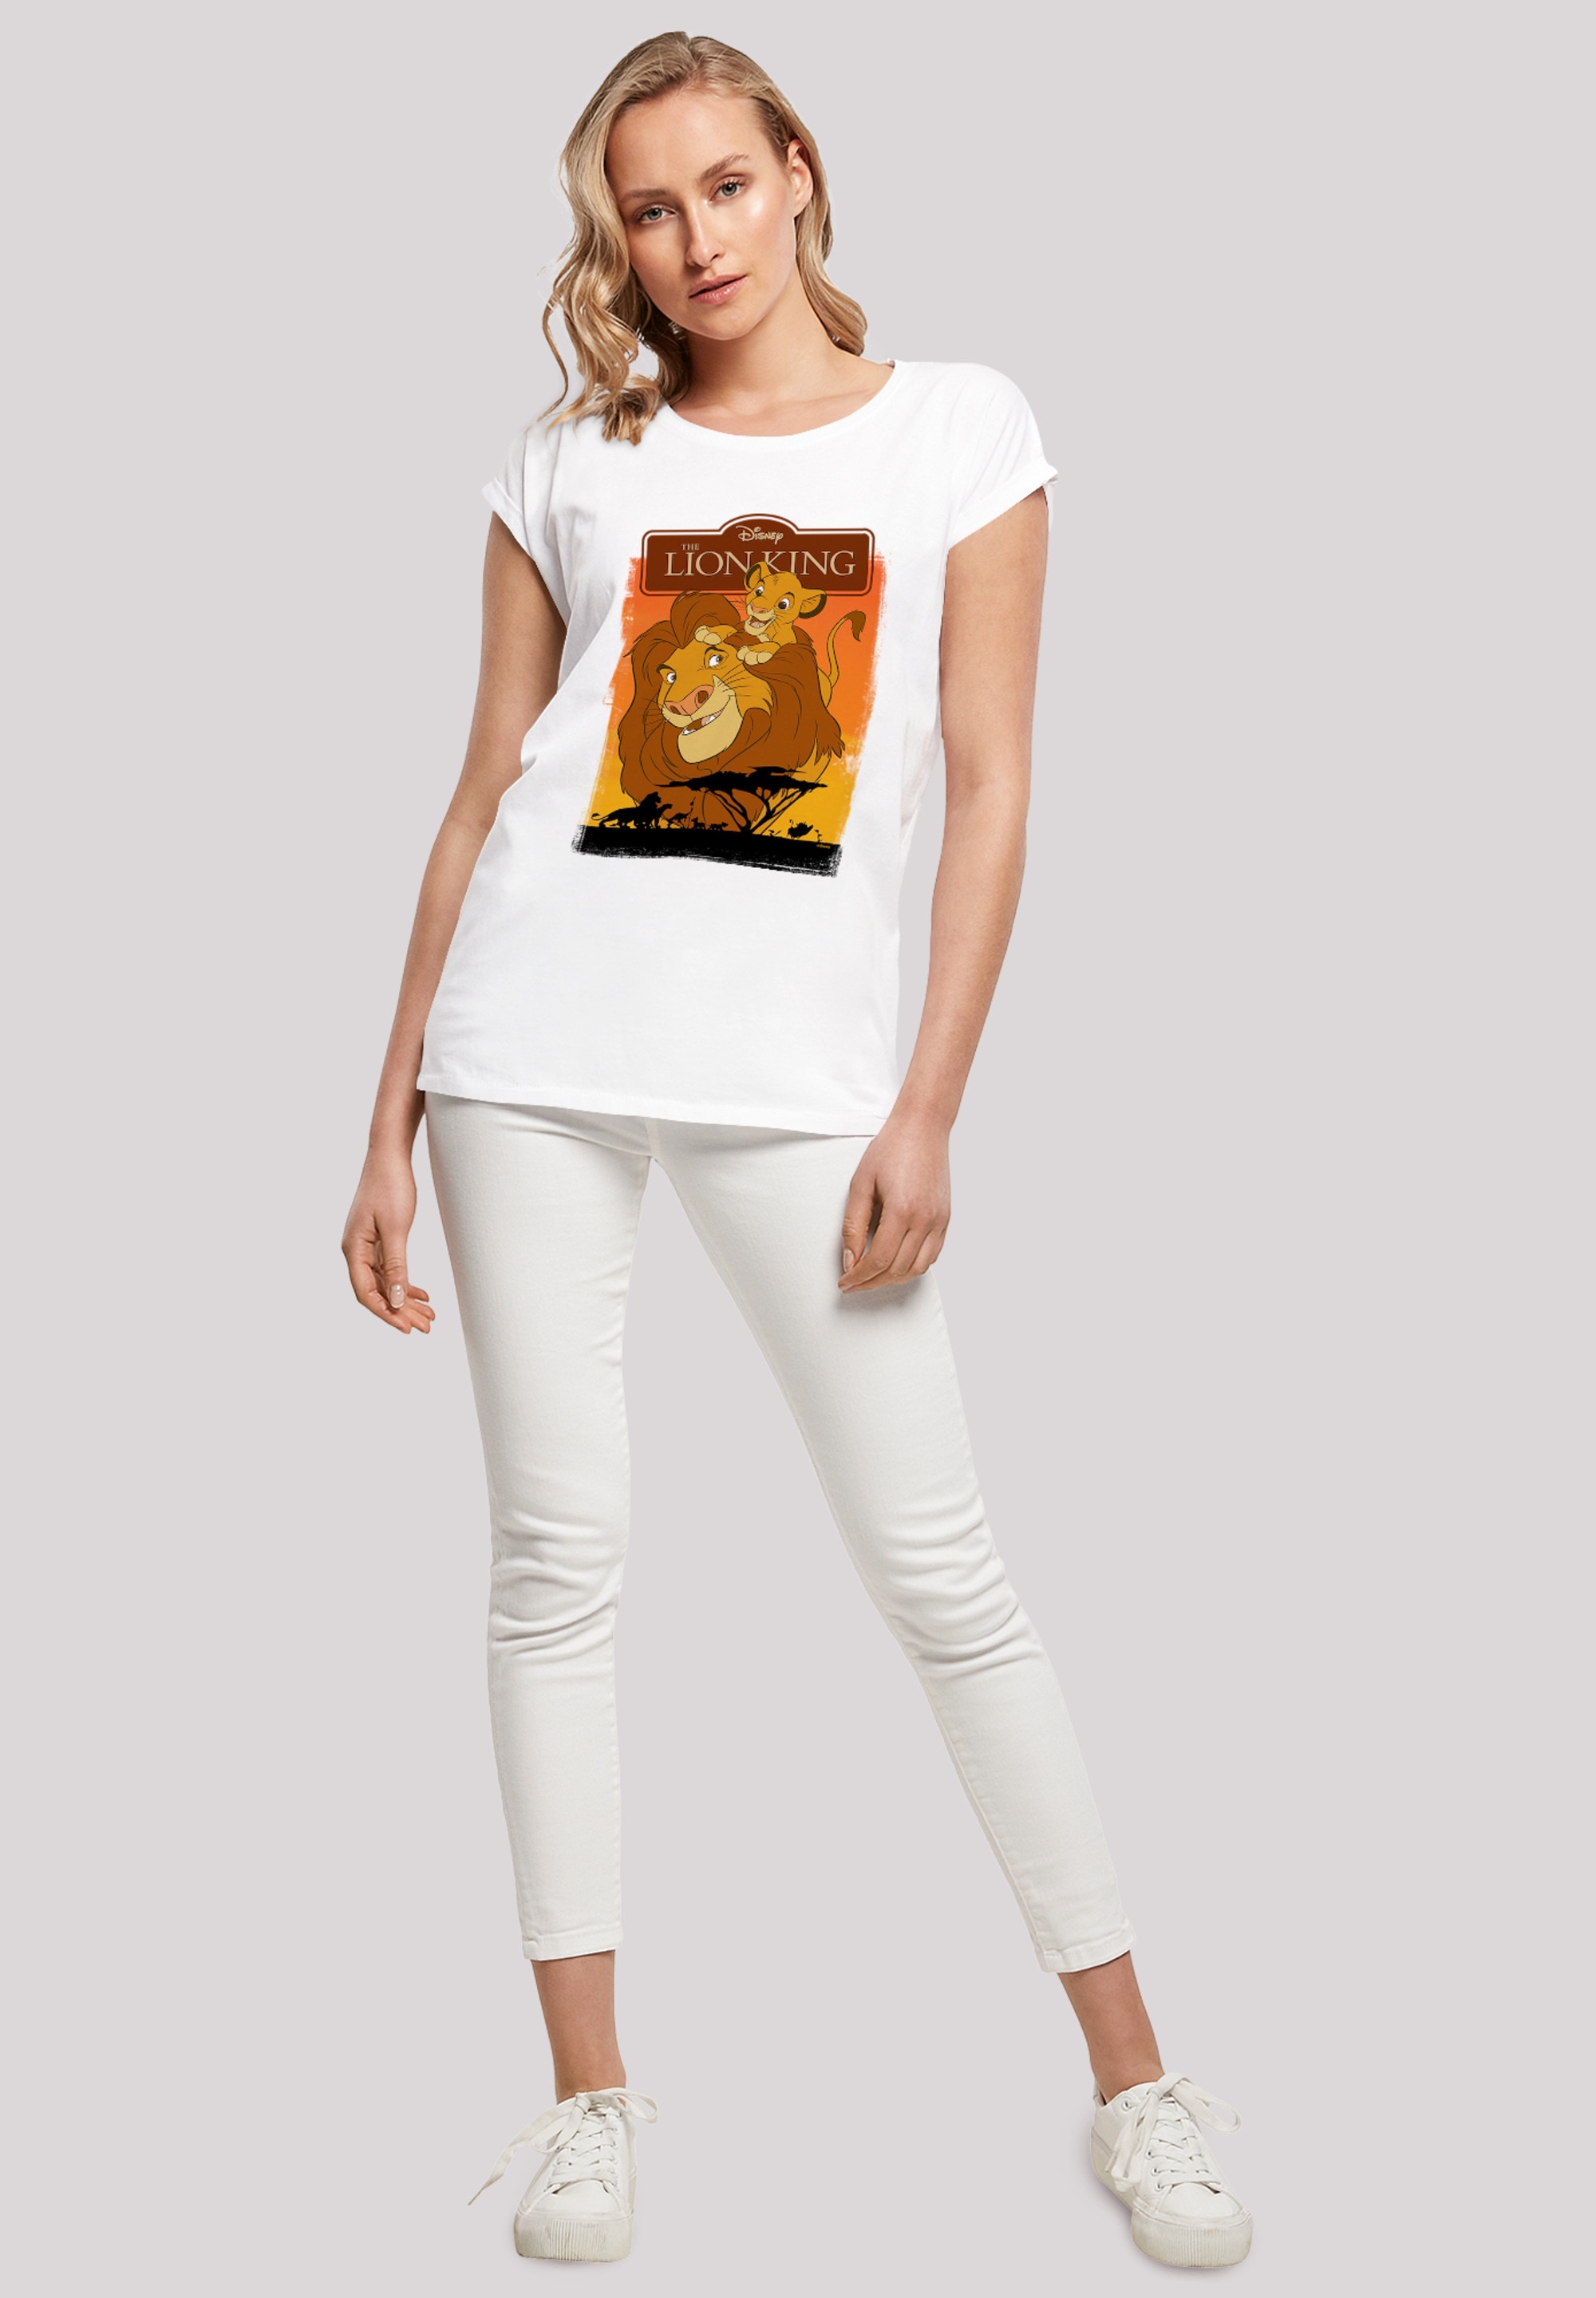 »König Löwen Simba Mufasa«, T-Shirt F4NT4STIC bestellen der Print und